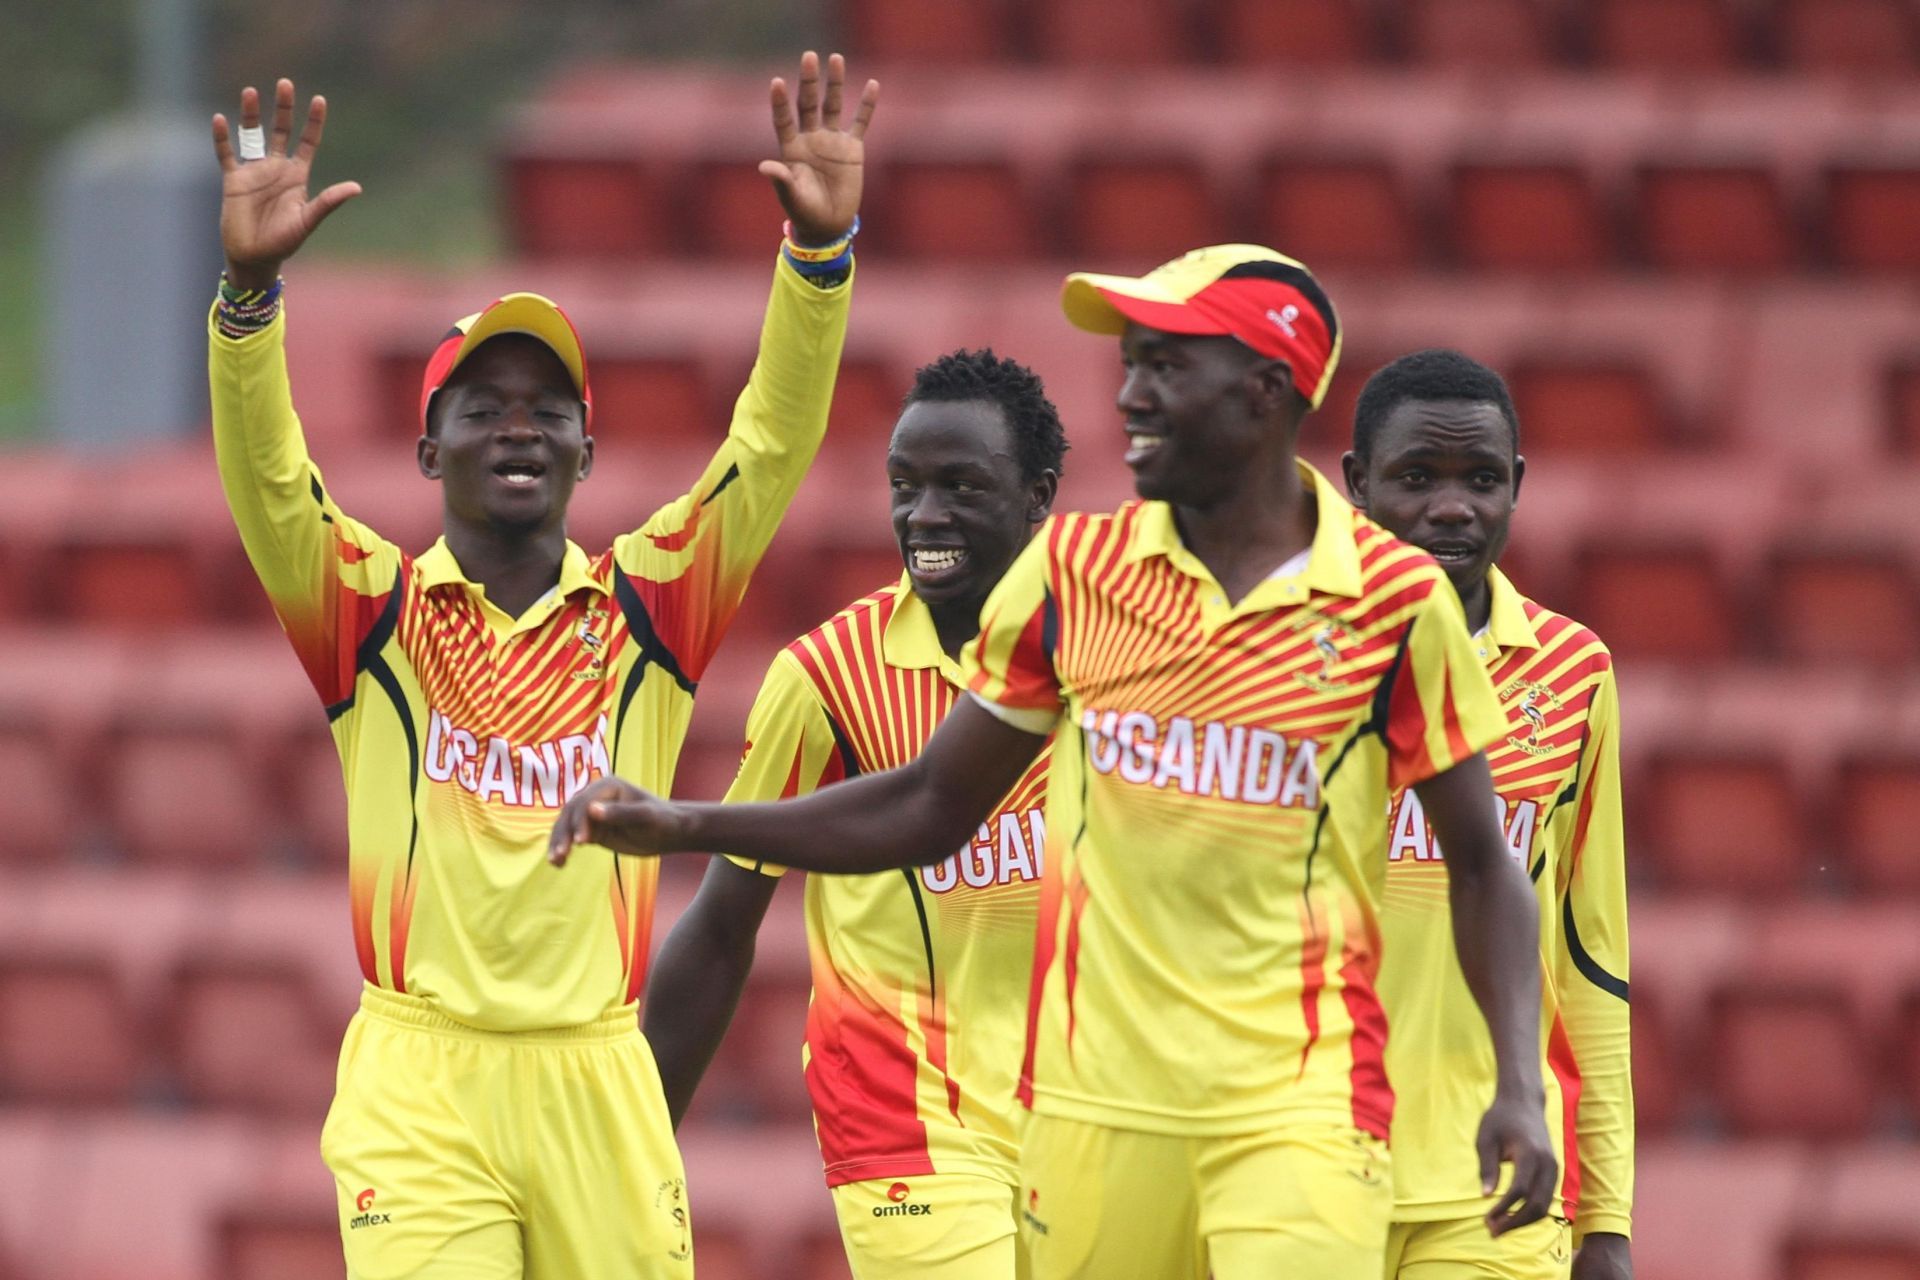 Uganda Cricket Team Players - Image Courtesy: ICC Cricket